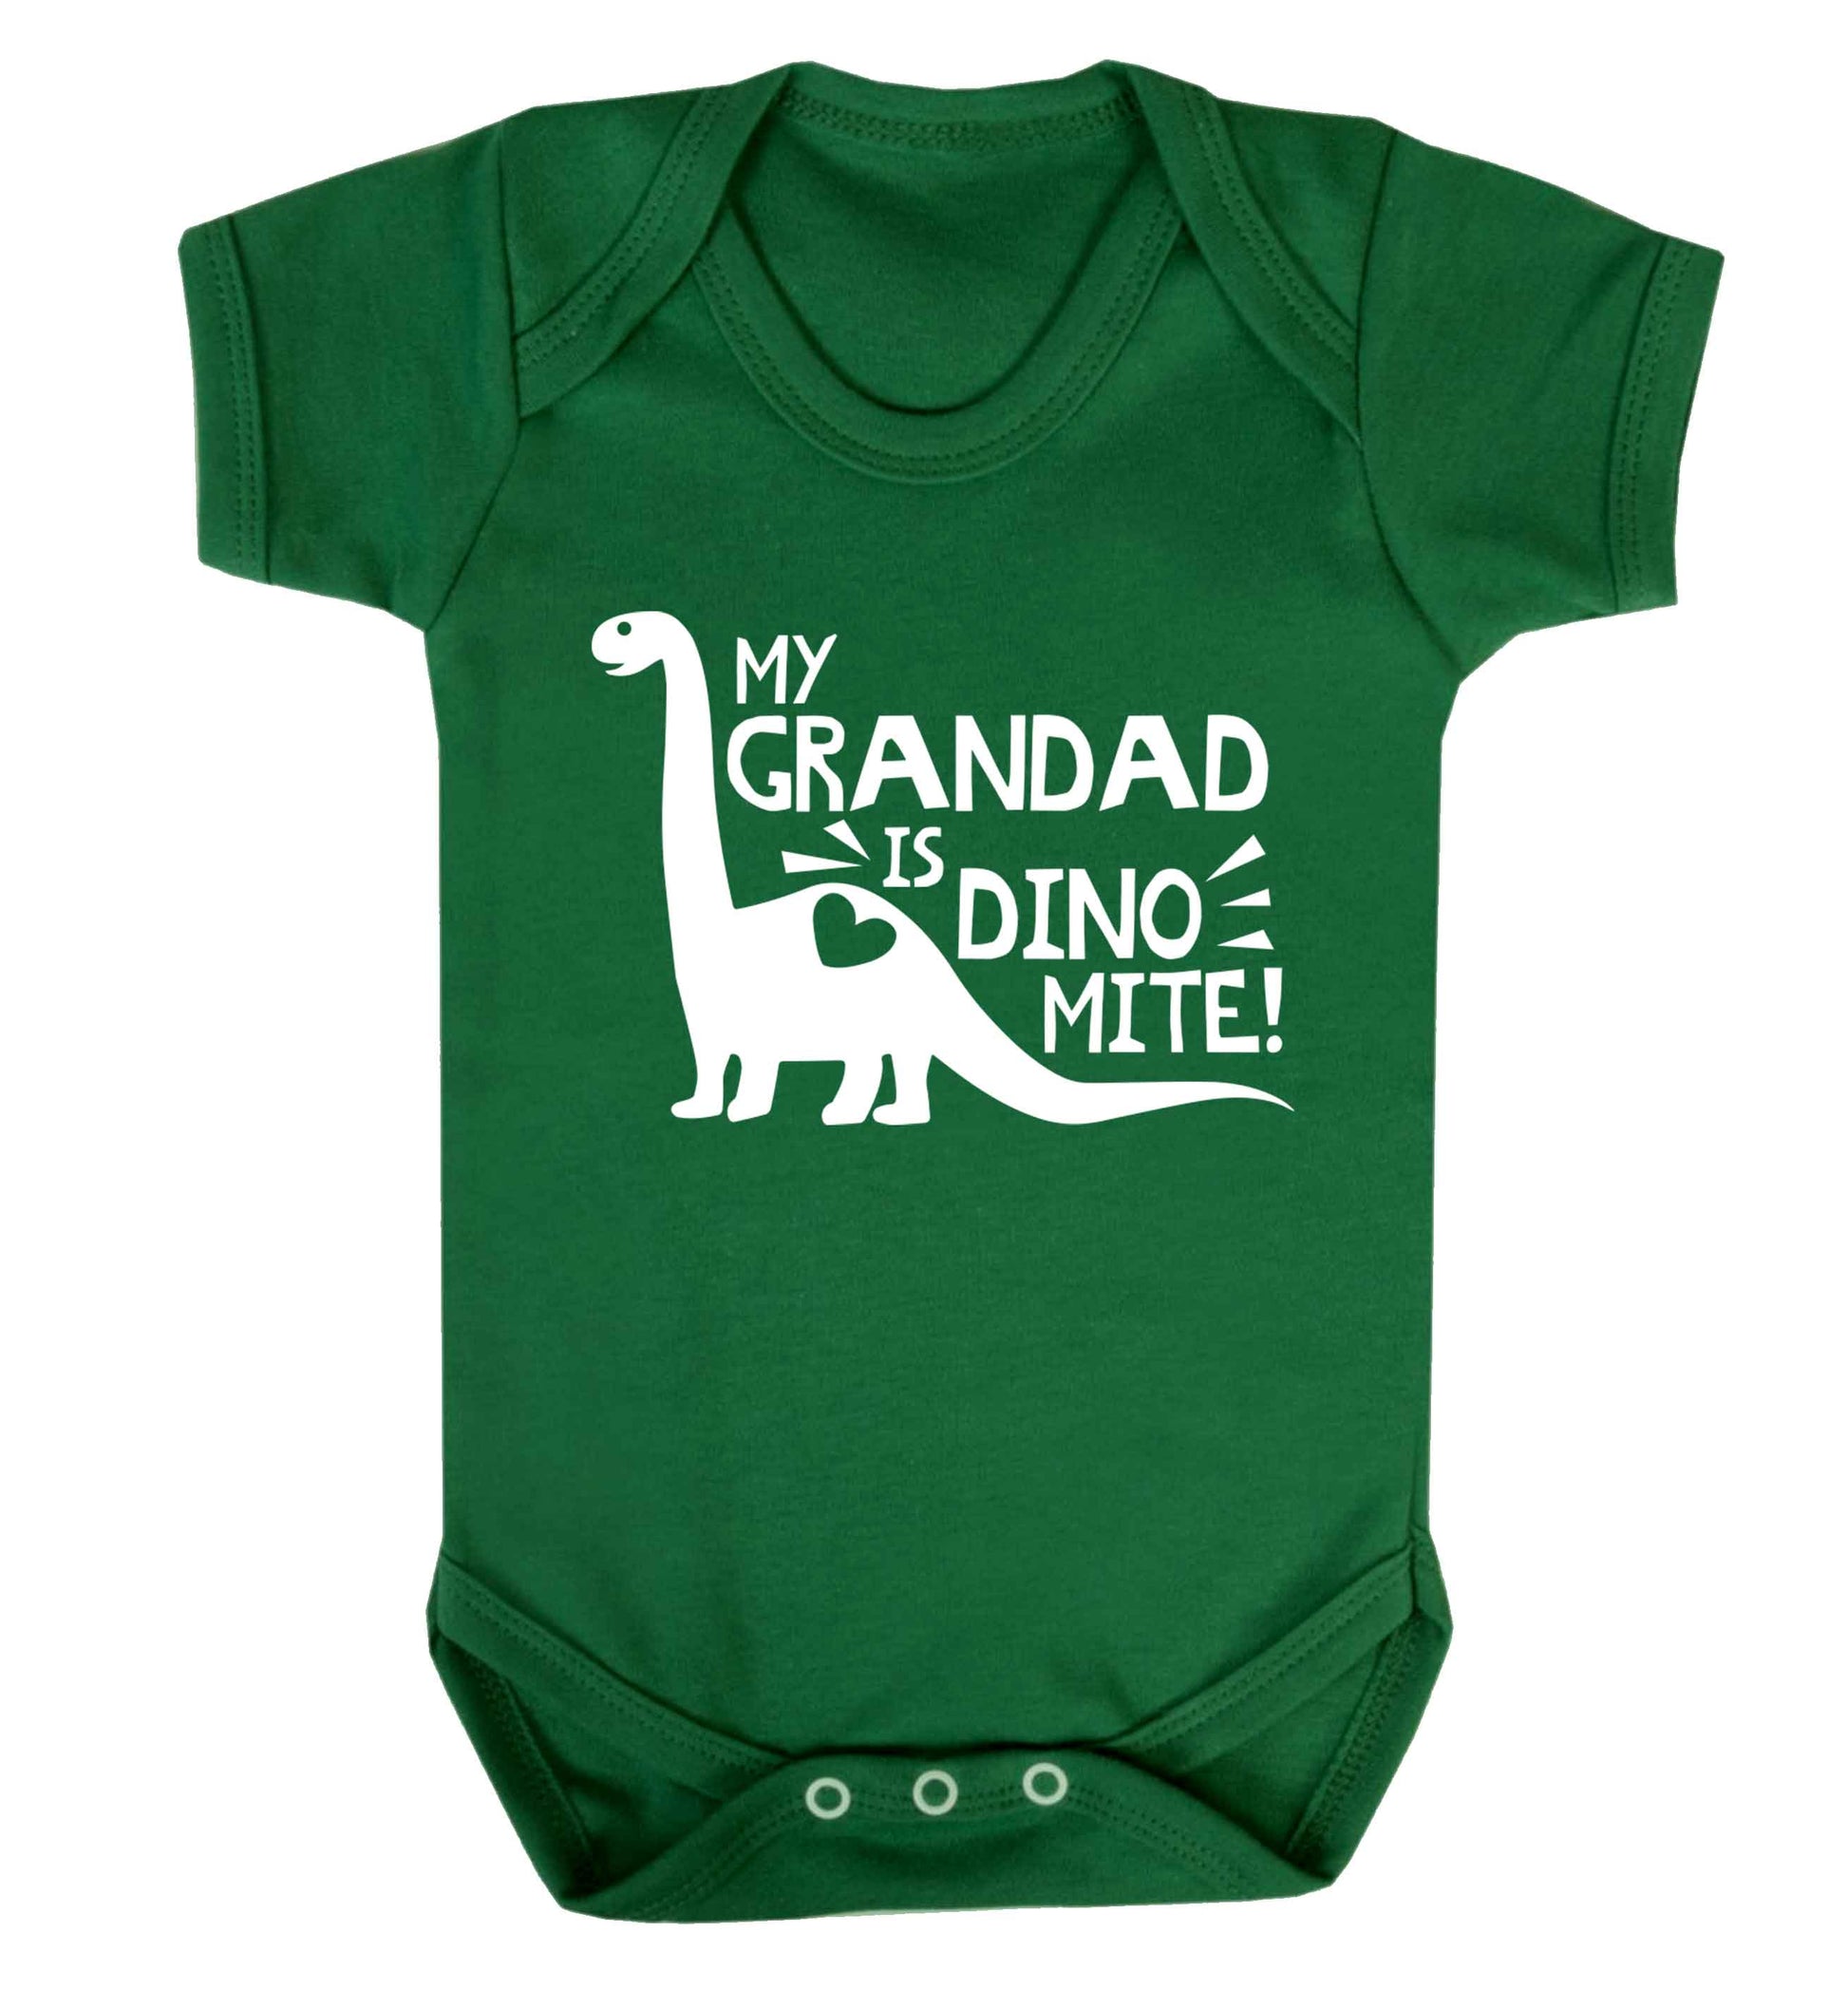 My grandad is dinomite! Baby Vest green 18-24 months